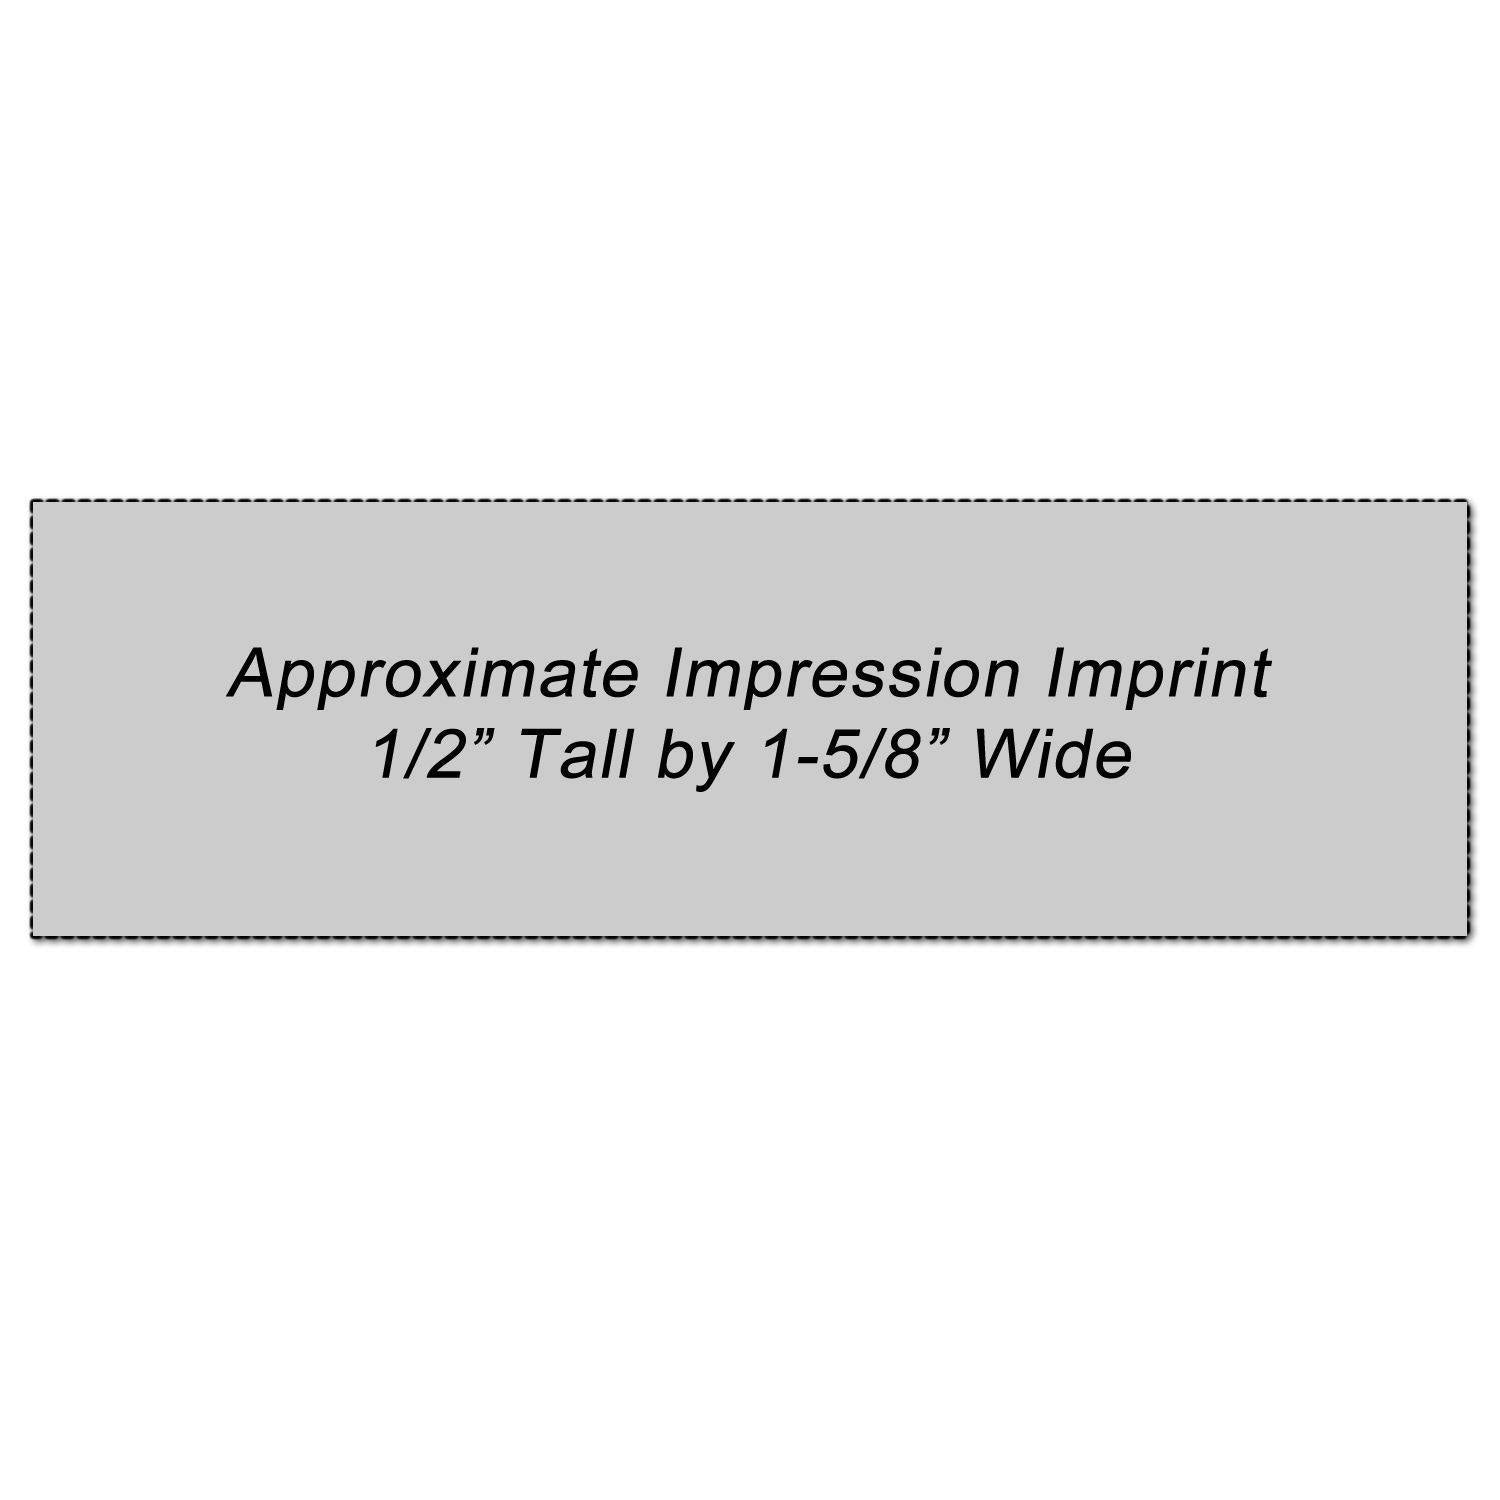 Client's Copy Xstamper Stamp Impression Size